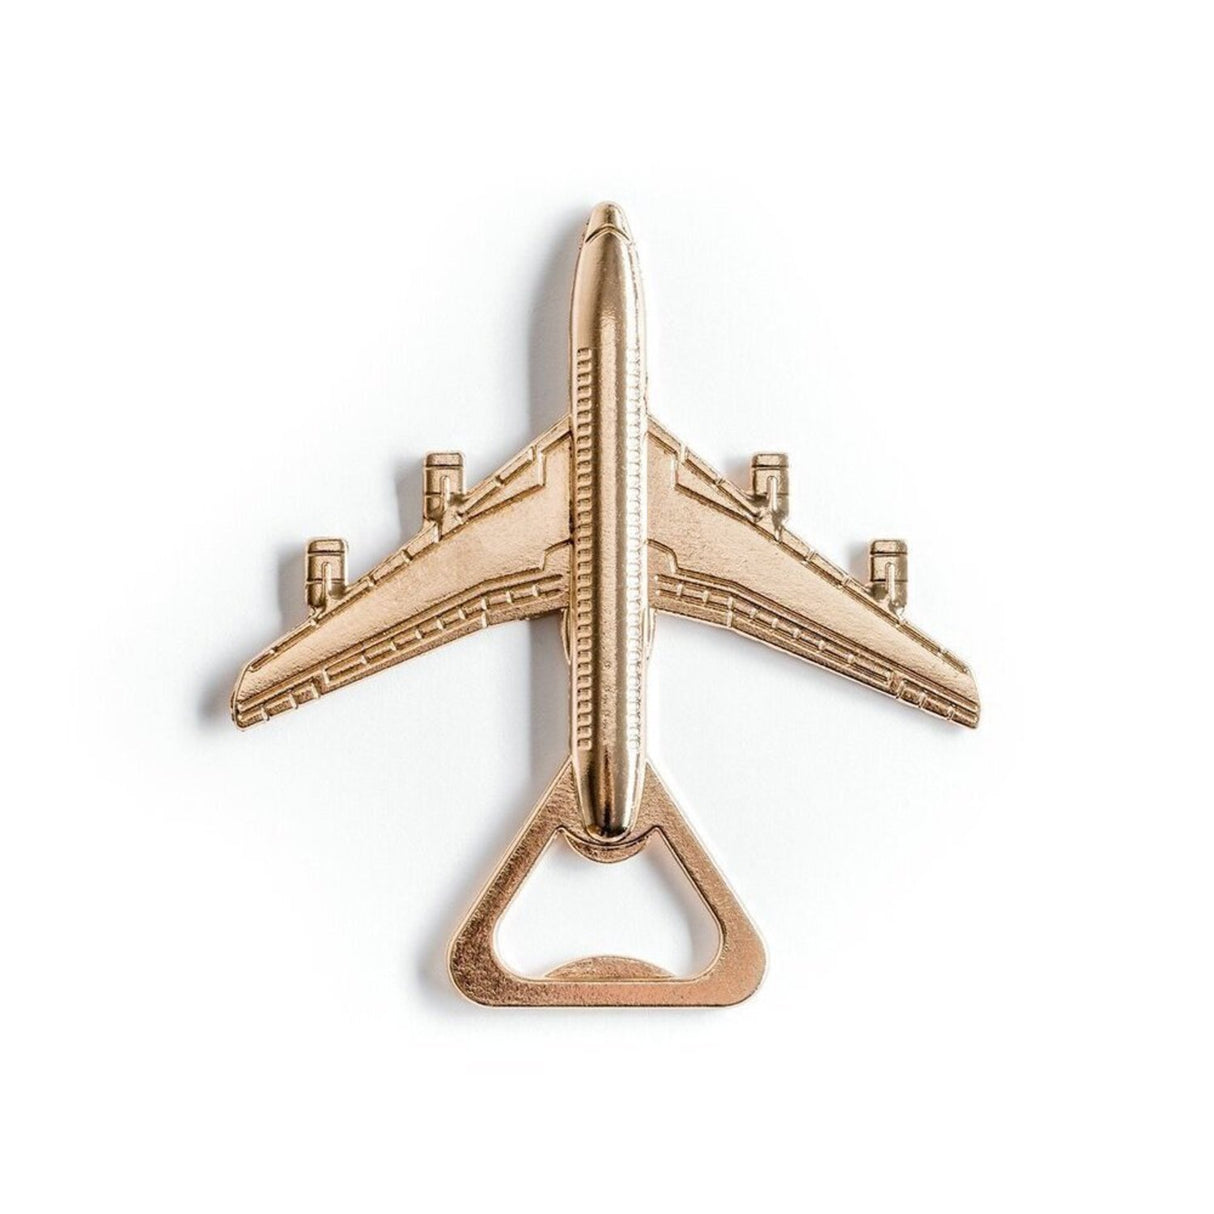 Flugzeug Flaschenöffner in bronze